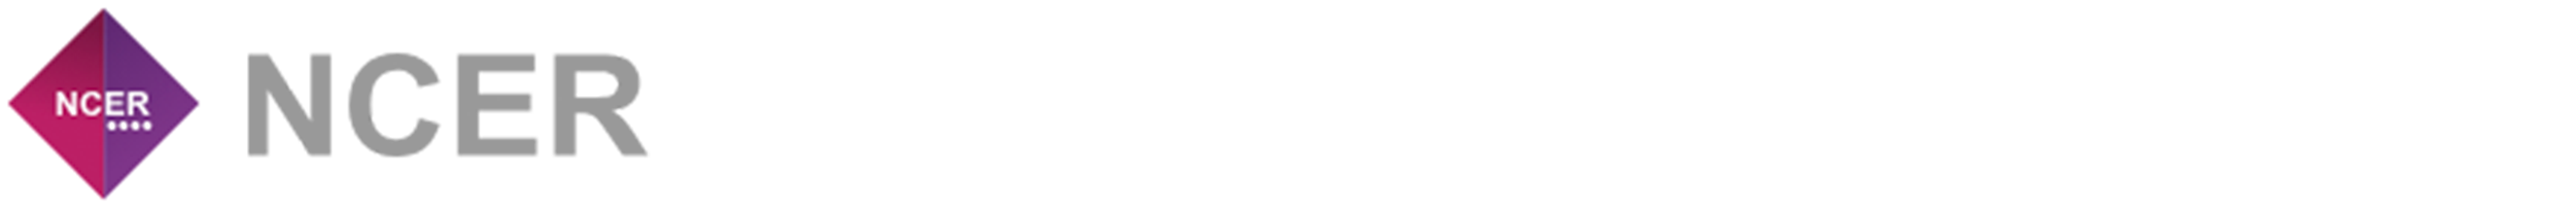 NCER-logo.png